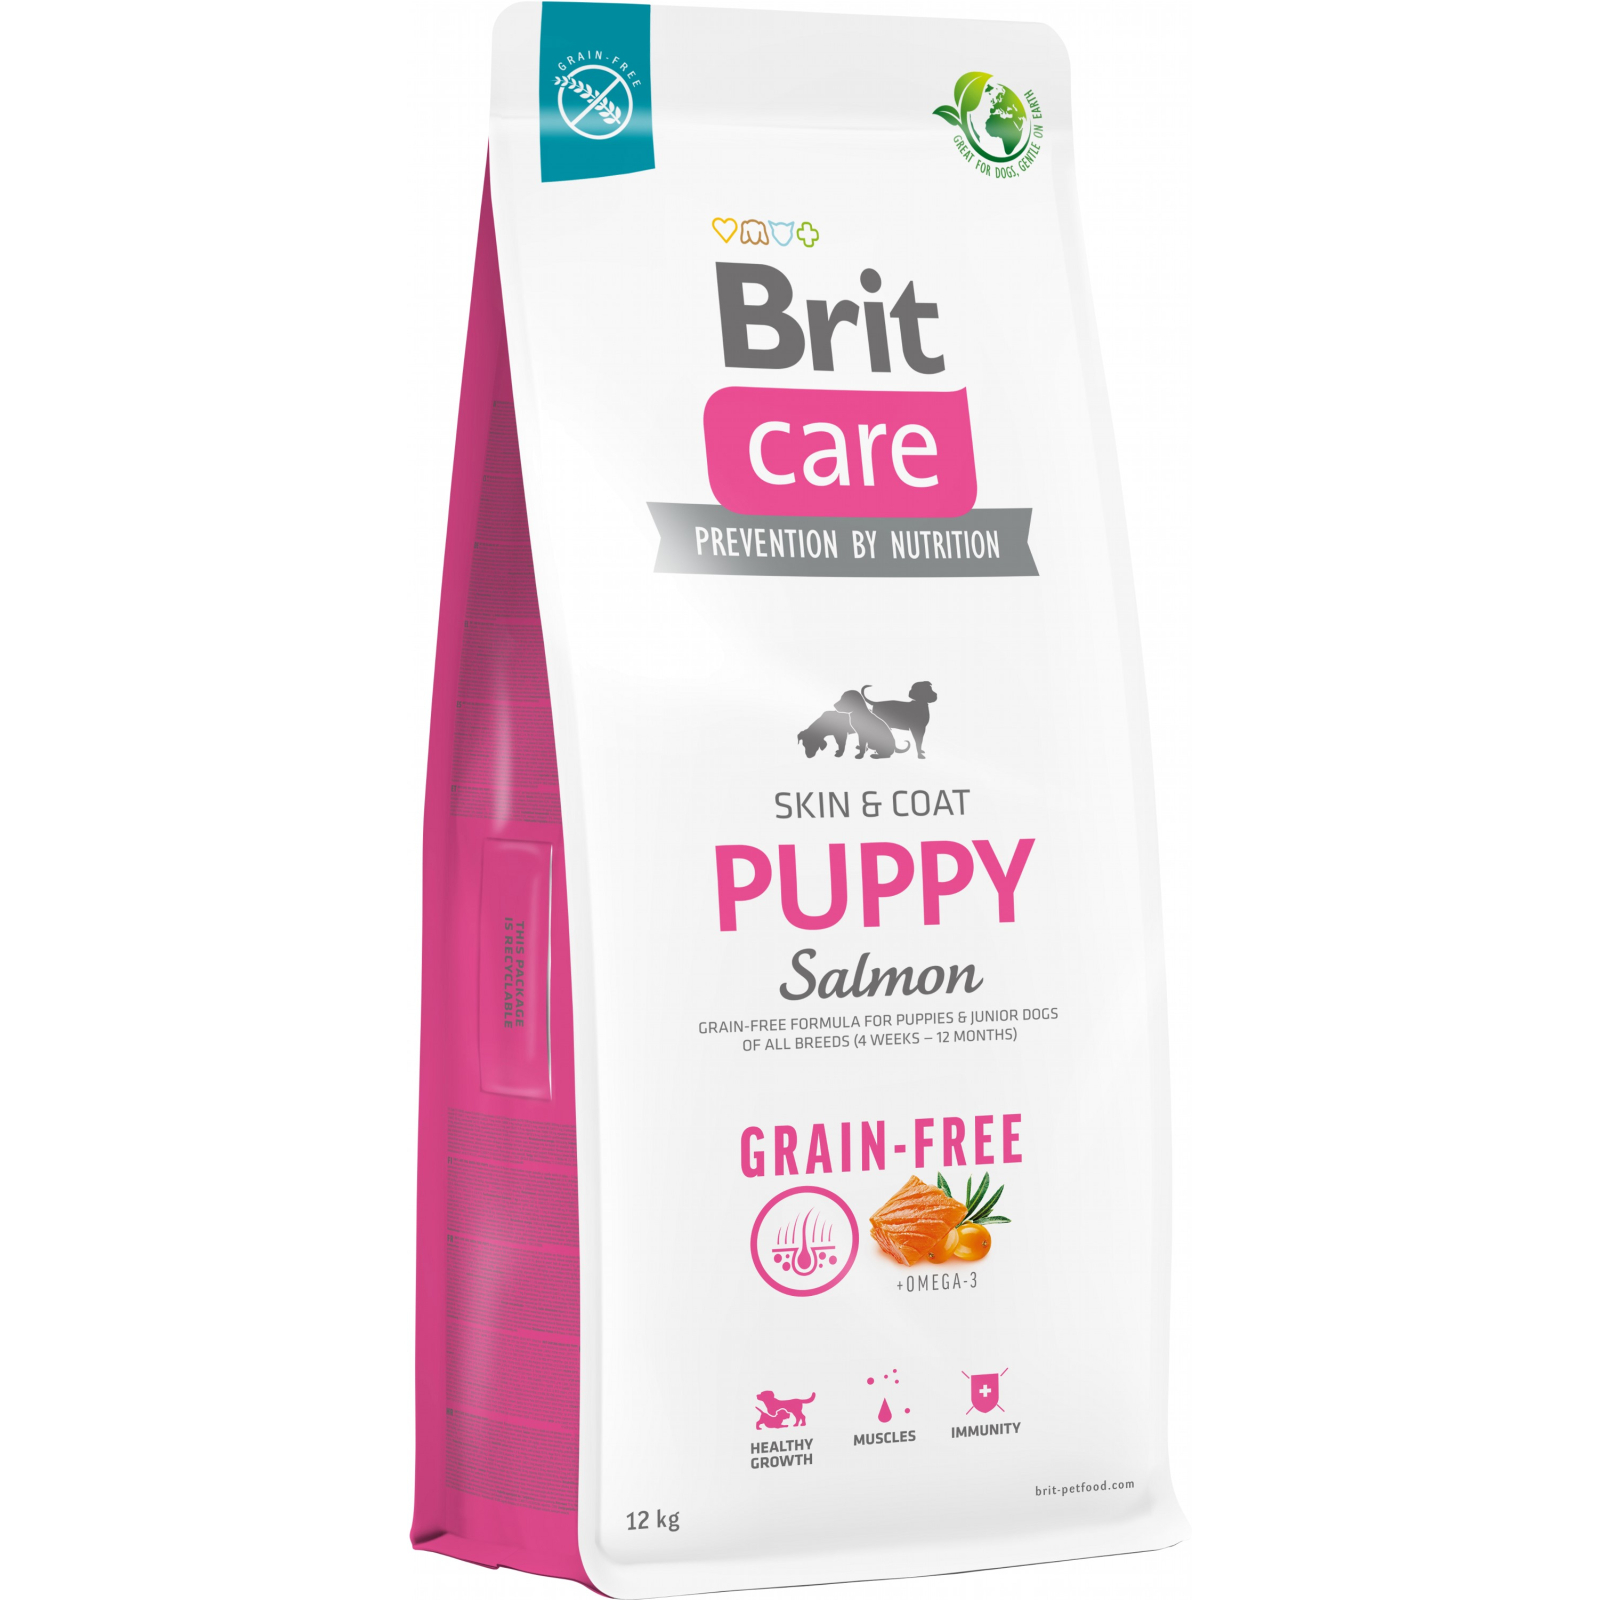 Сухой корм для собак Brit Care Dog Grain-free Puppy беззерновой с лососем 3 кг (8595602558810)